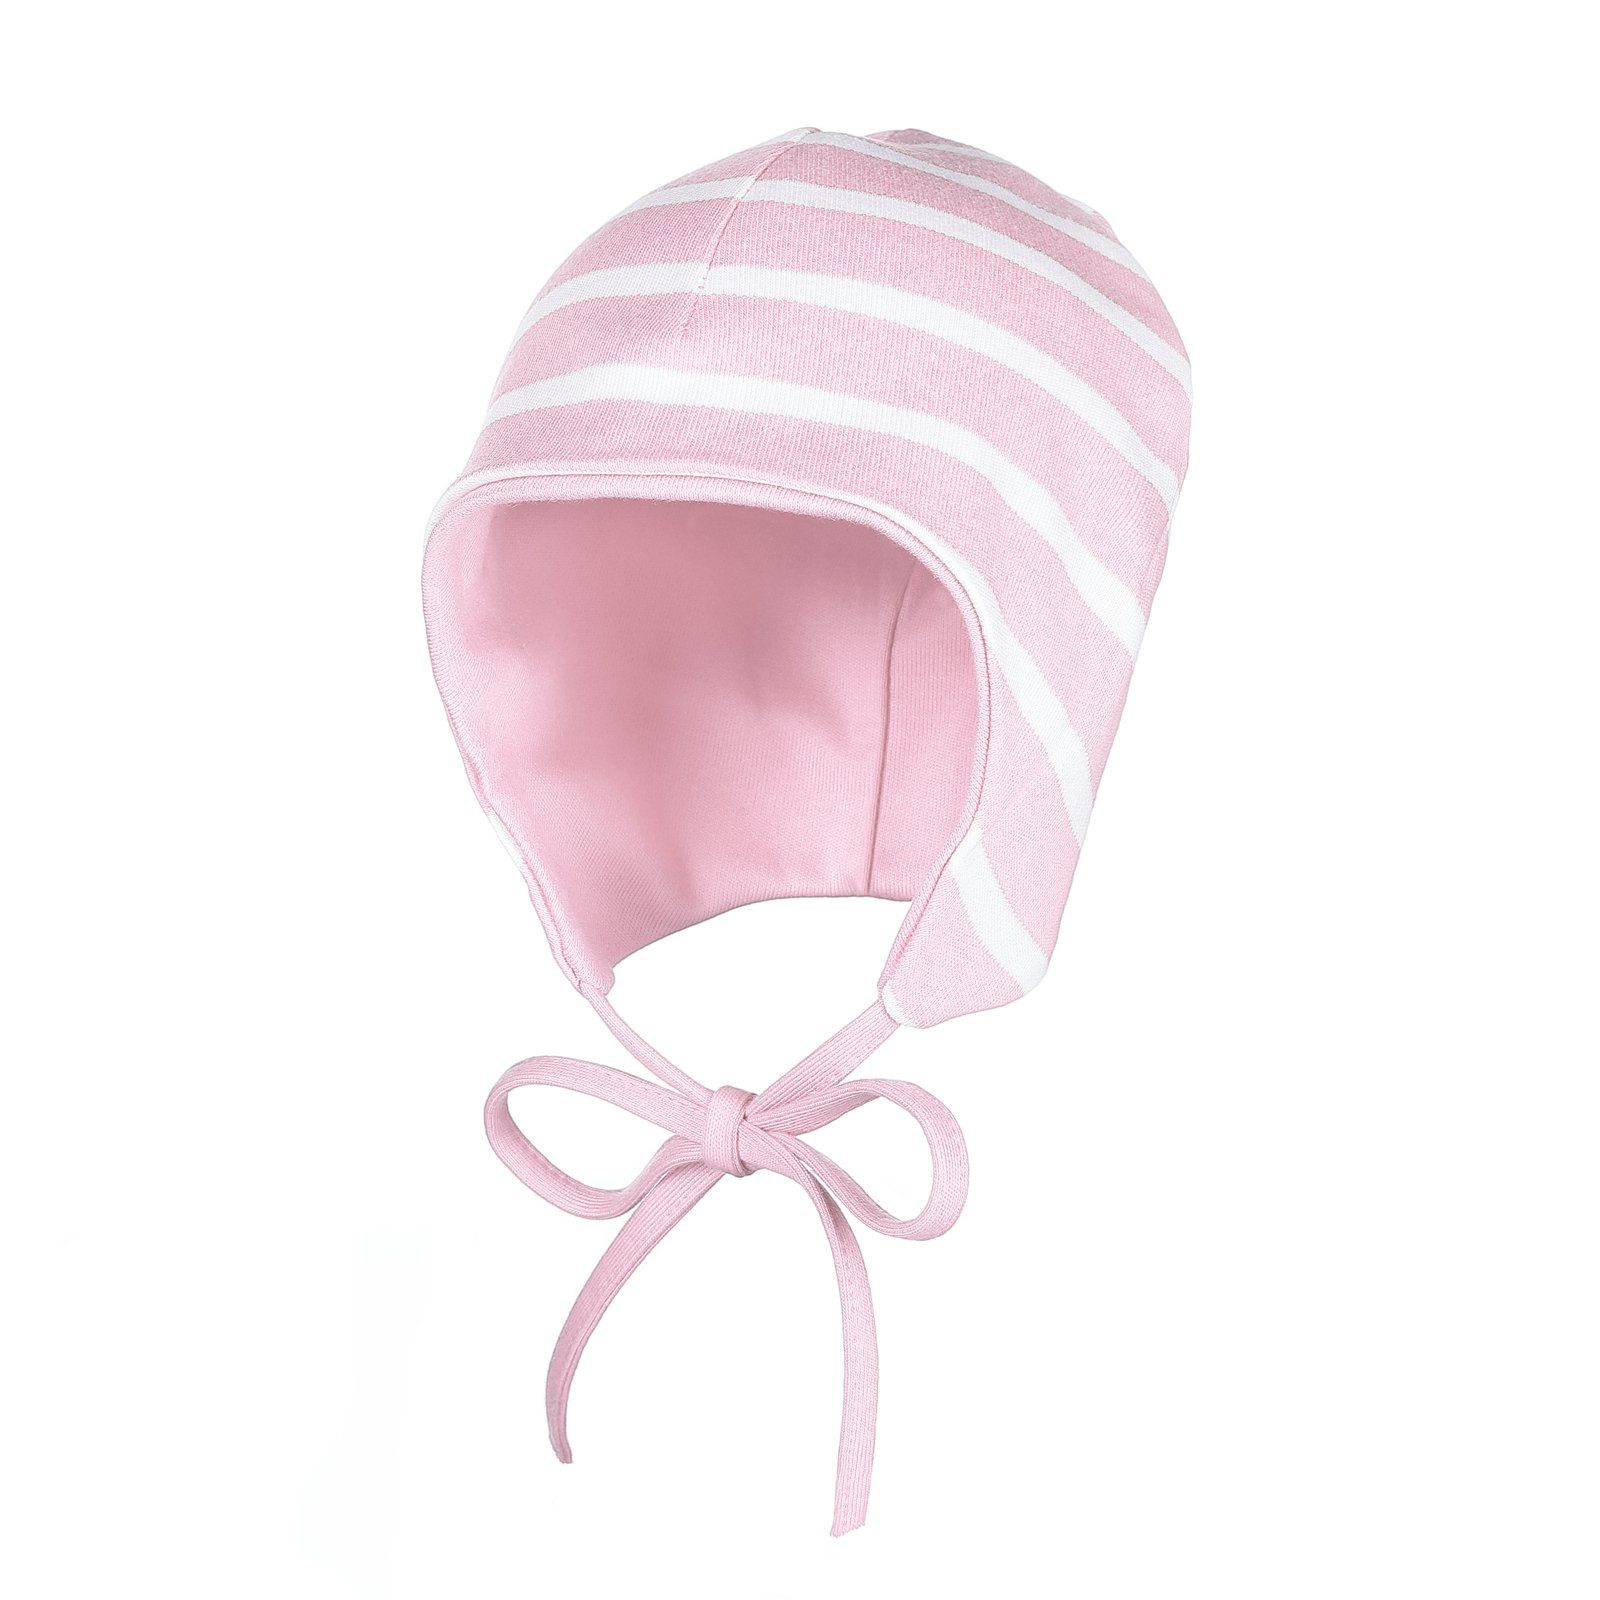 modAS Jerseymütze Baby Mütze Baumwolle - Kopfbedeckung mit Bindeband und Ohrenschutz (14) rosa / weiß